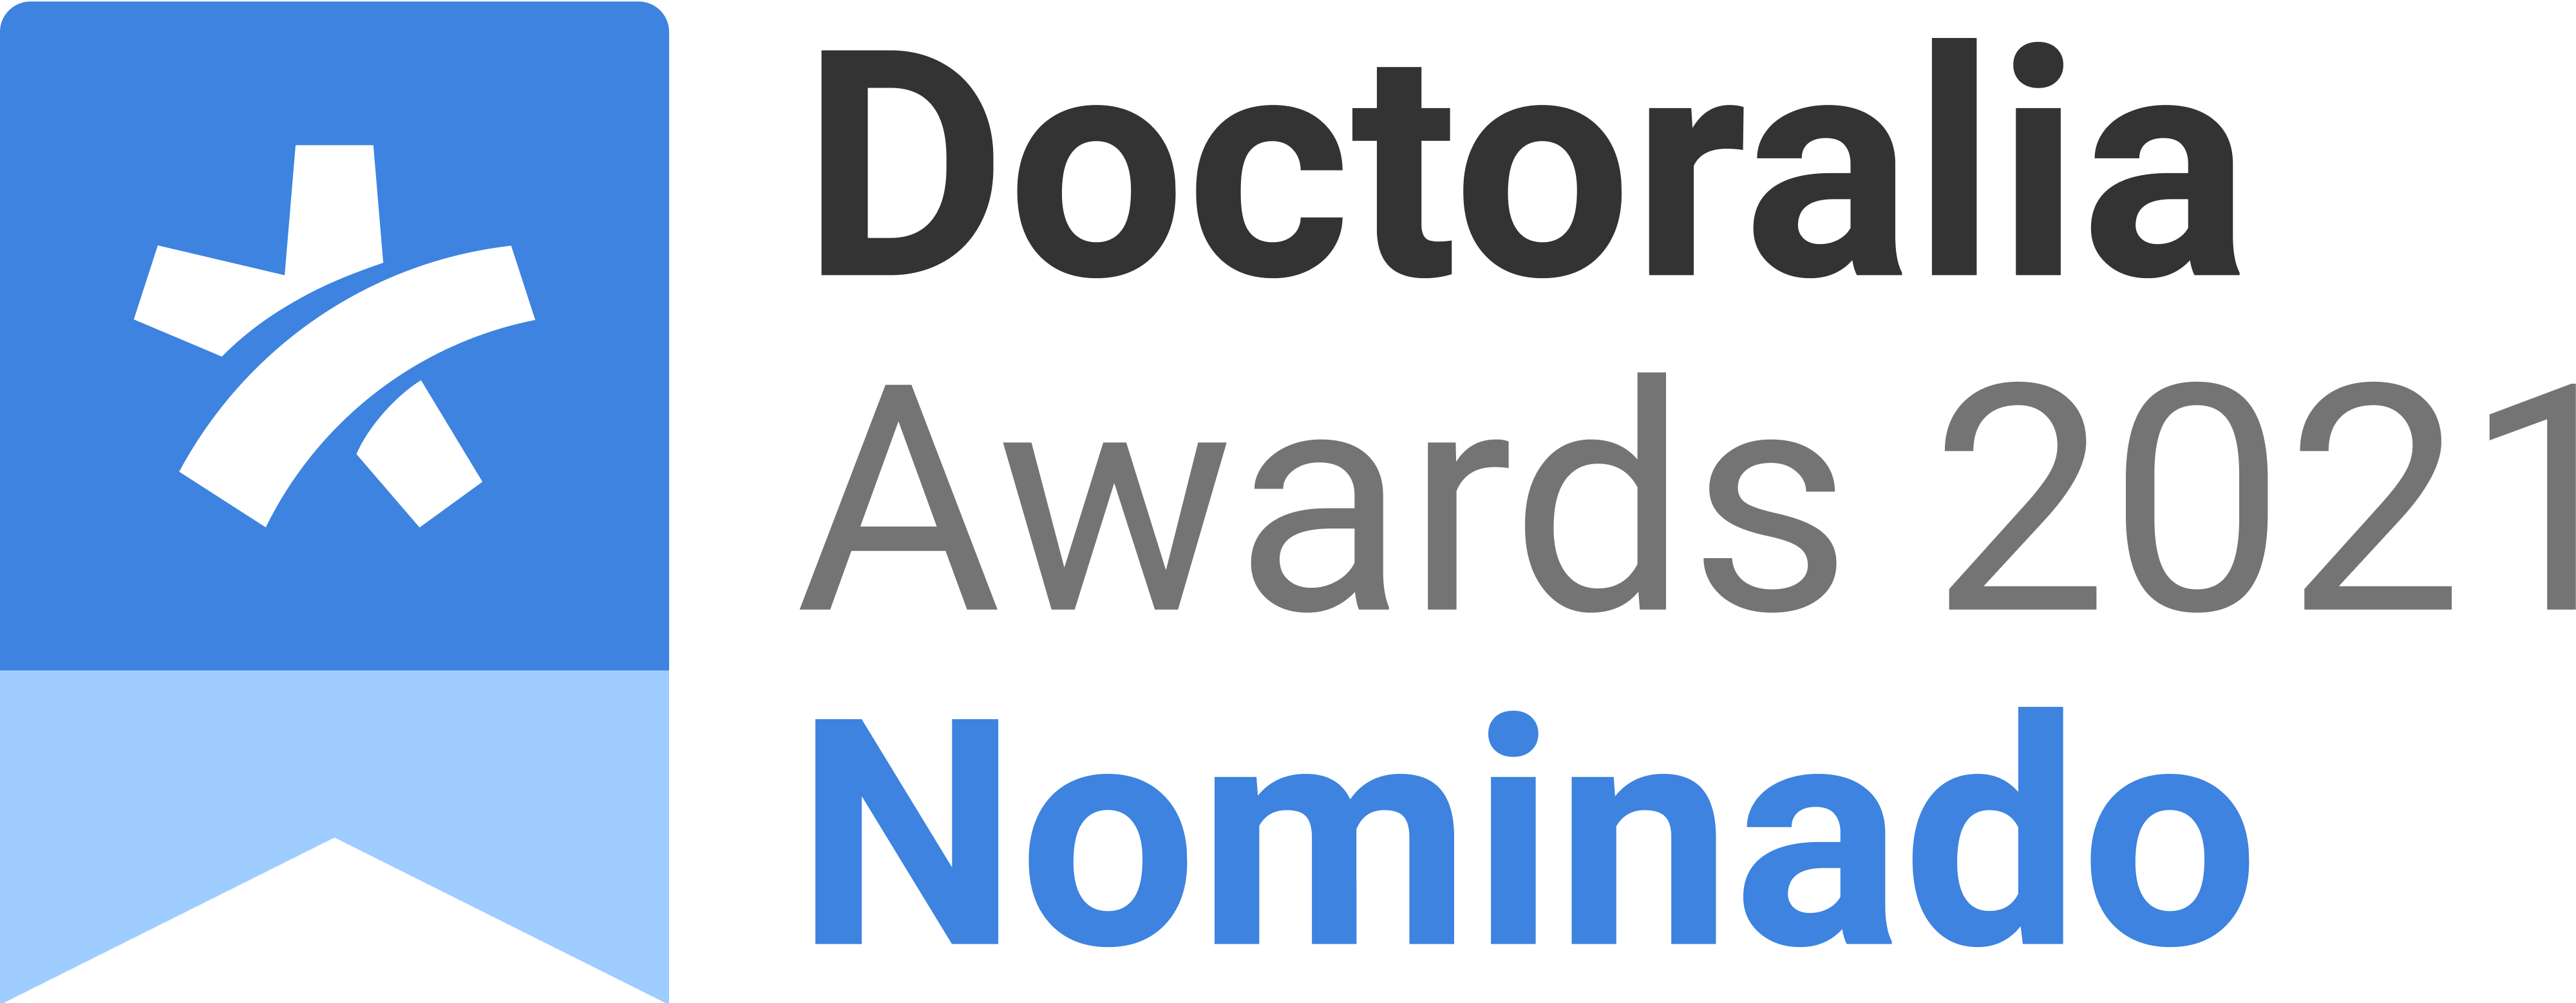 Nominado doctoralia awards 2021